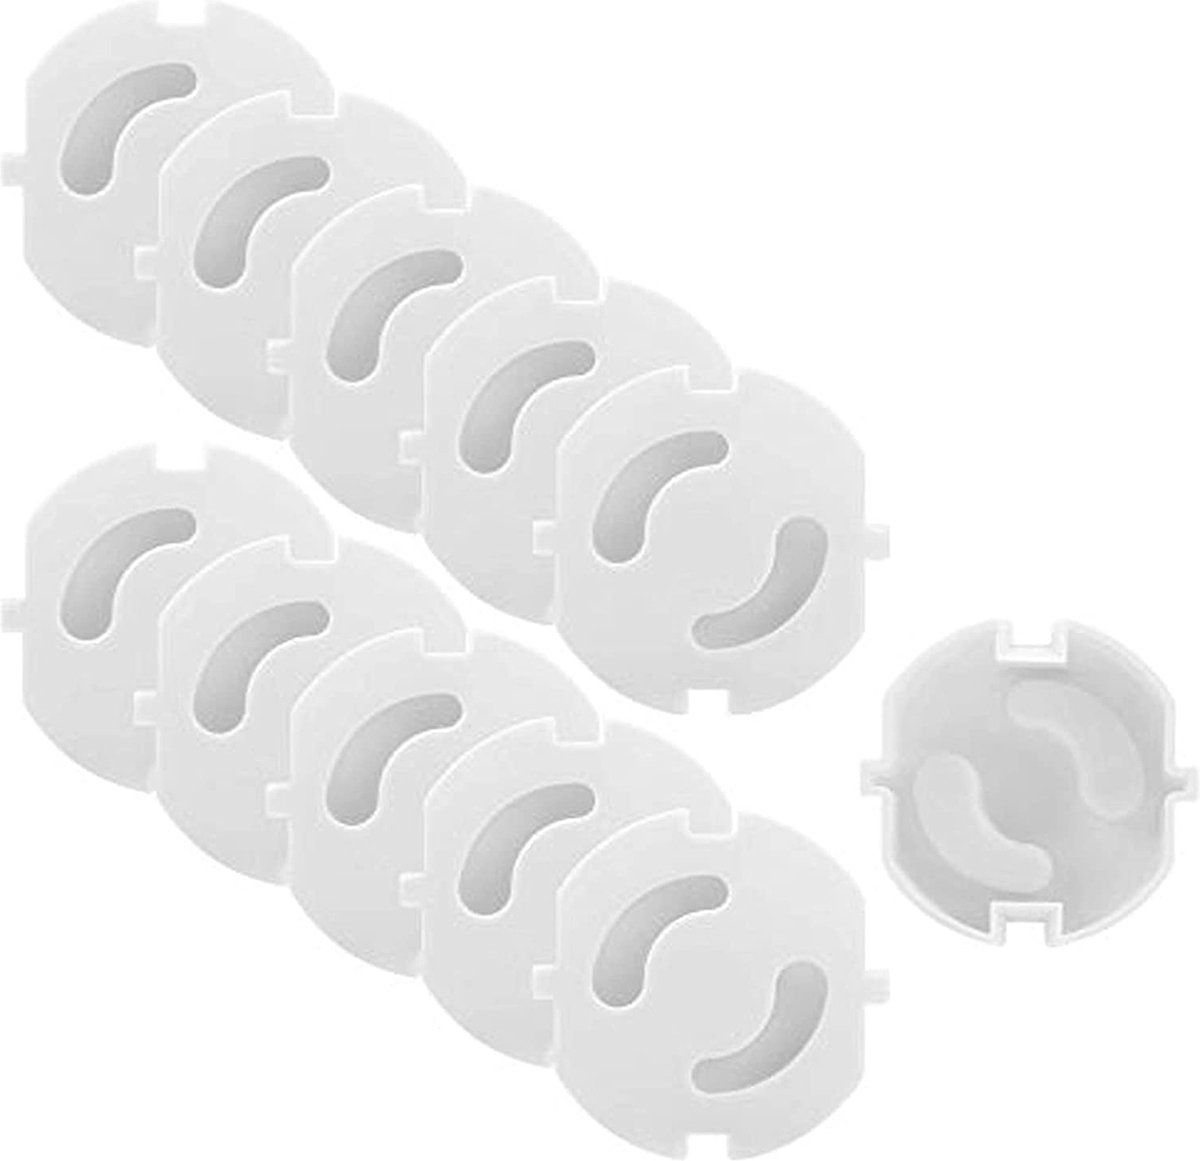 Intirilife Stopcontactenafdekking in wit – set van 20 stopcontacten zonder lijm voor betere bescherming – stekkerbeveiliging zonder lijm